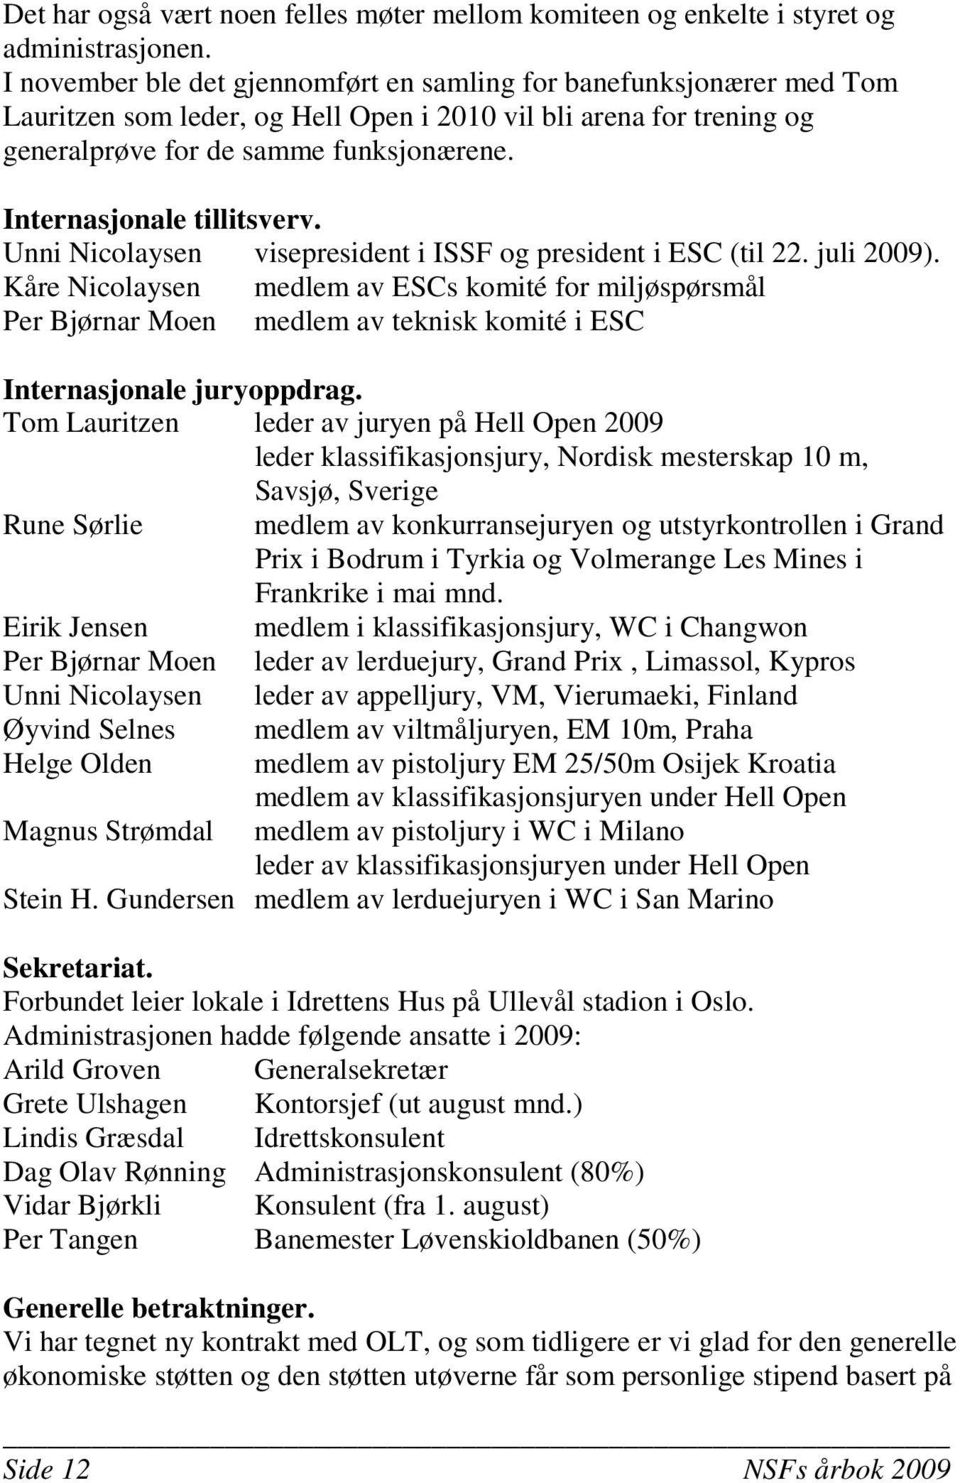 Internasjonale tillitsverv. Unni Nicolaysen visepresident i ISSF og president i ESC (til 22. juli 2009).